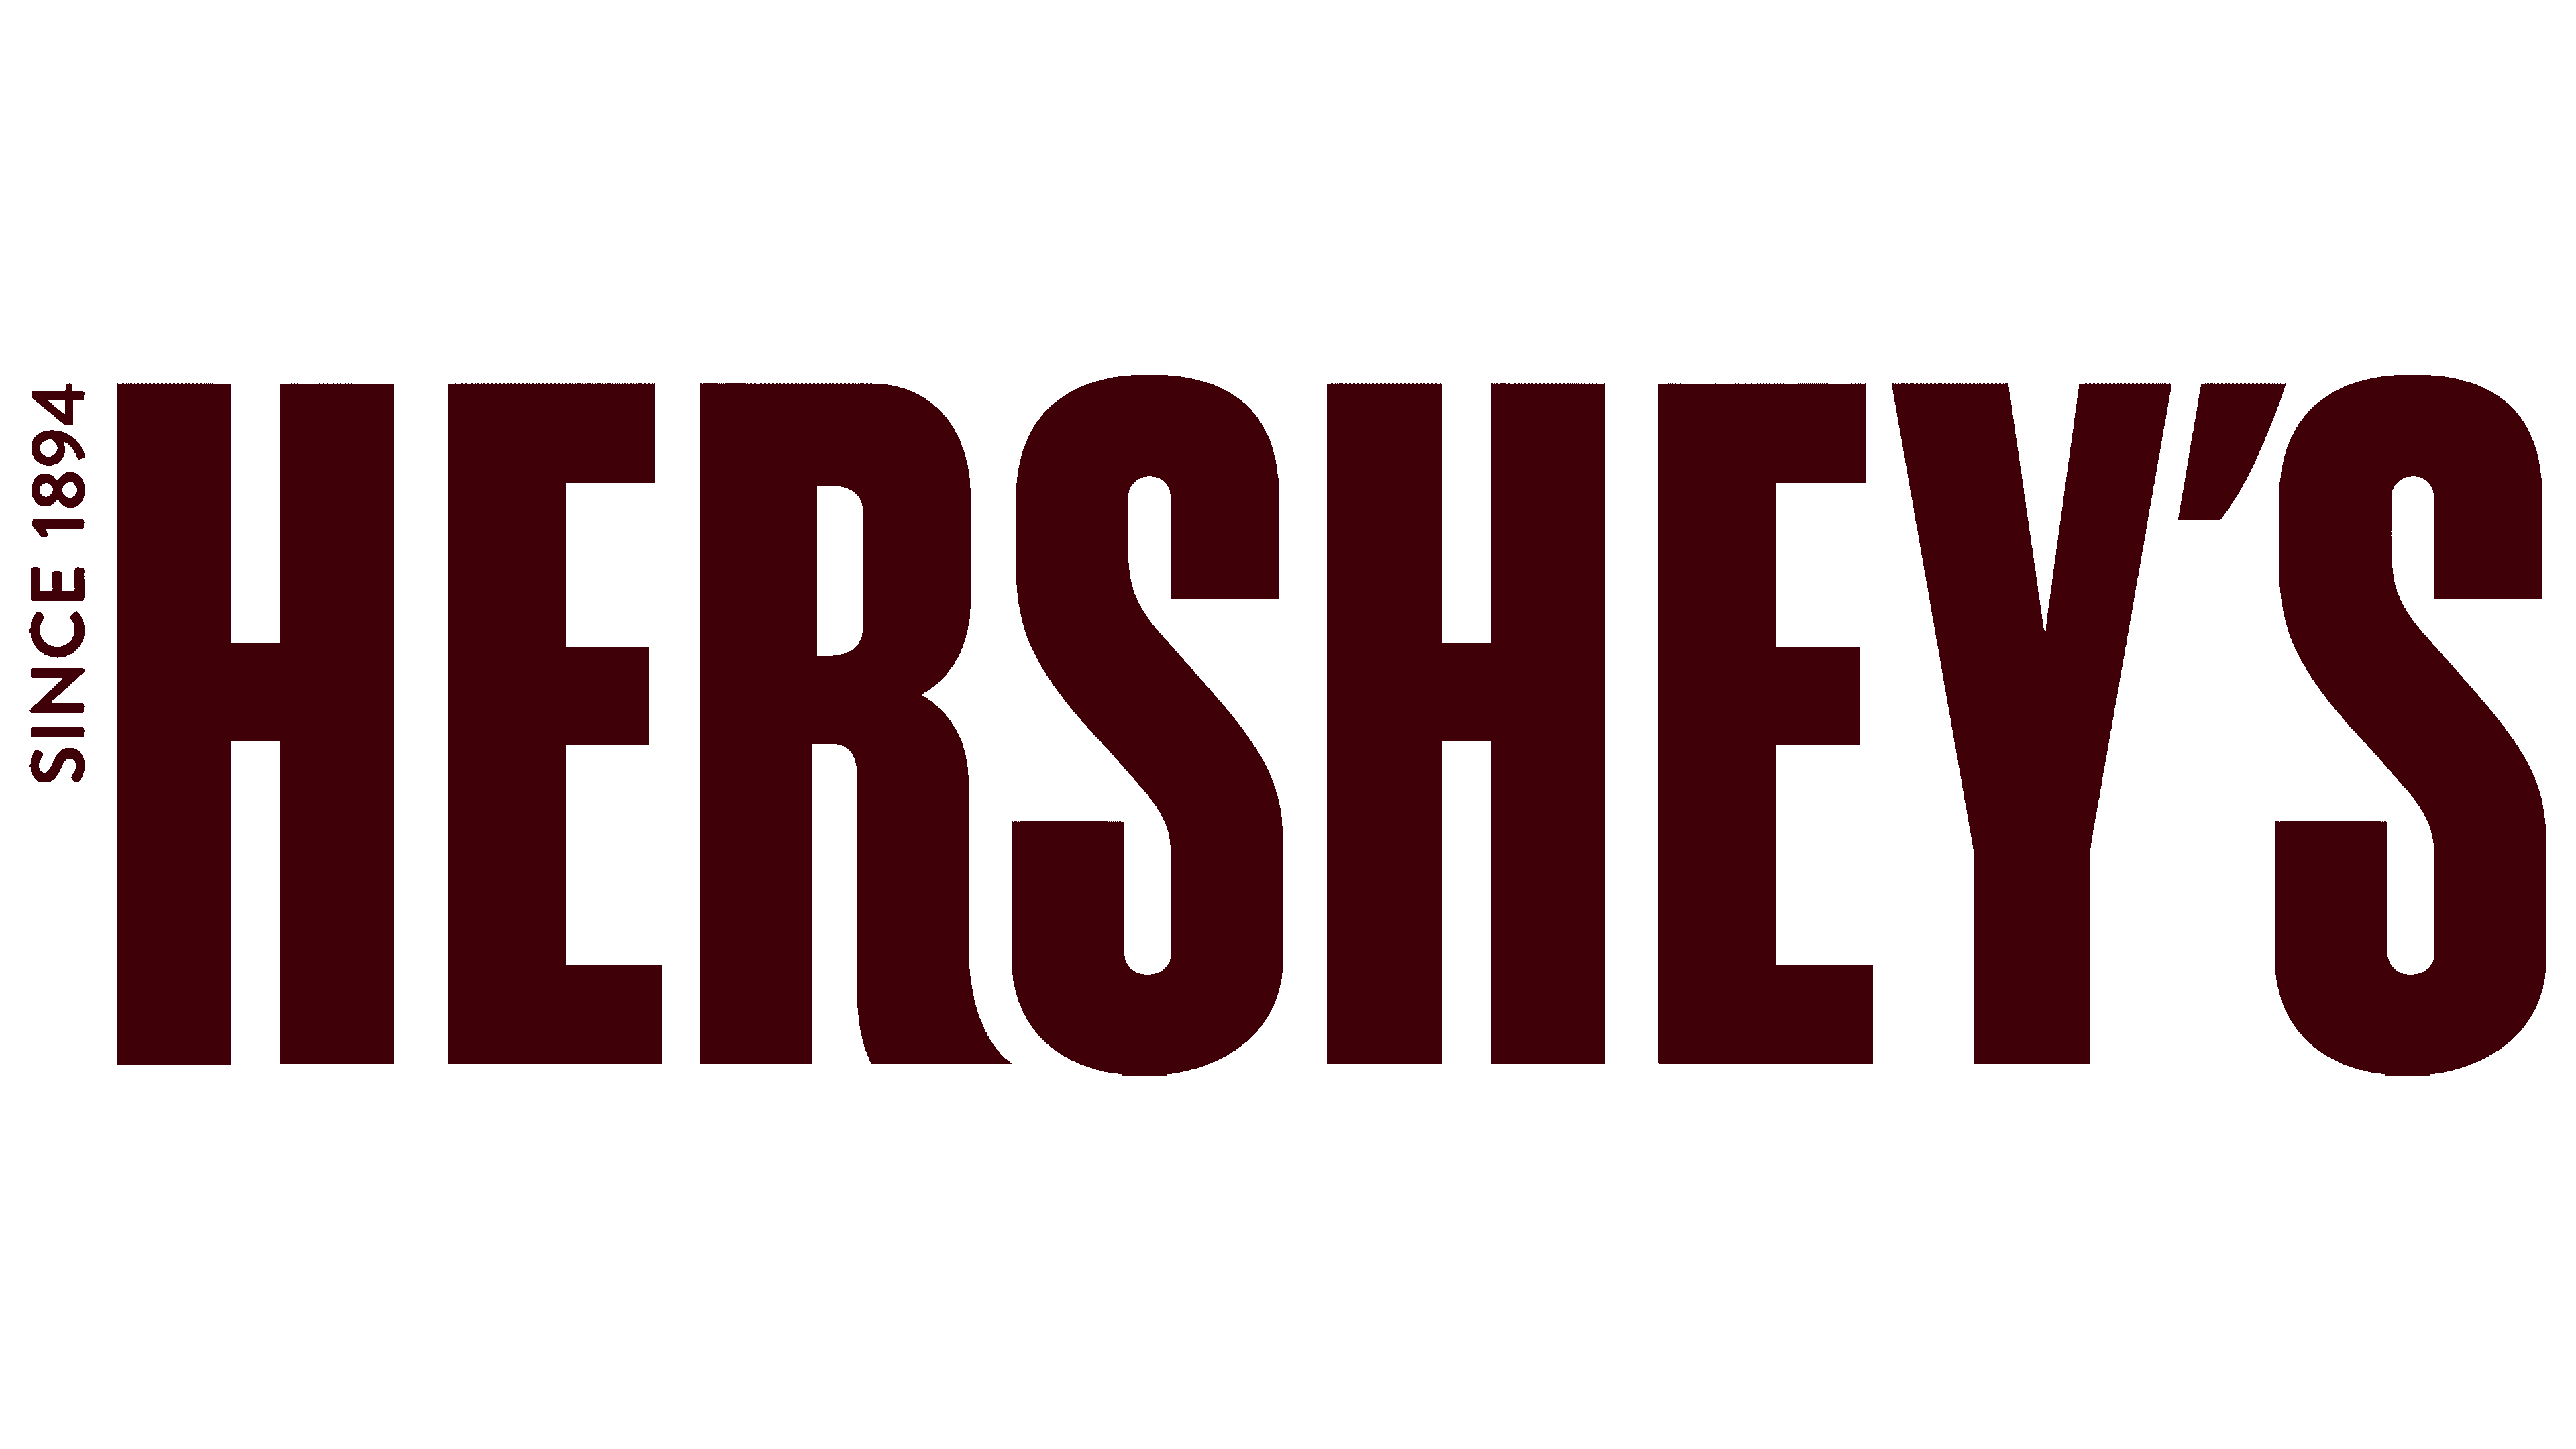 The hershey company. Hersheys шоколад logo. Hershey co логотип. Hershey's brand.